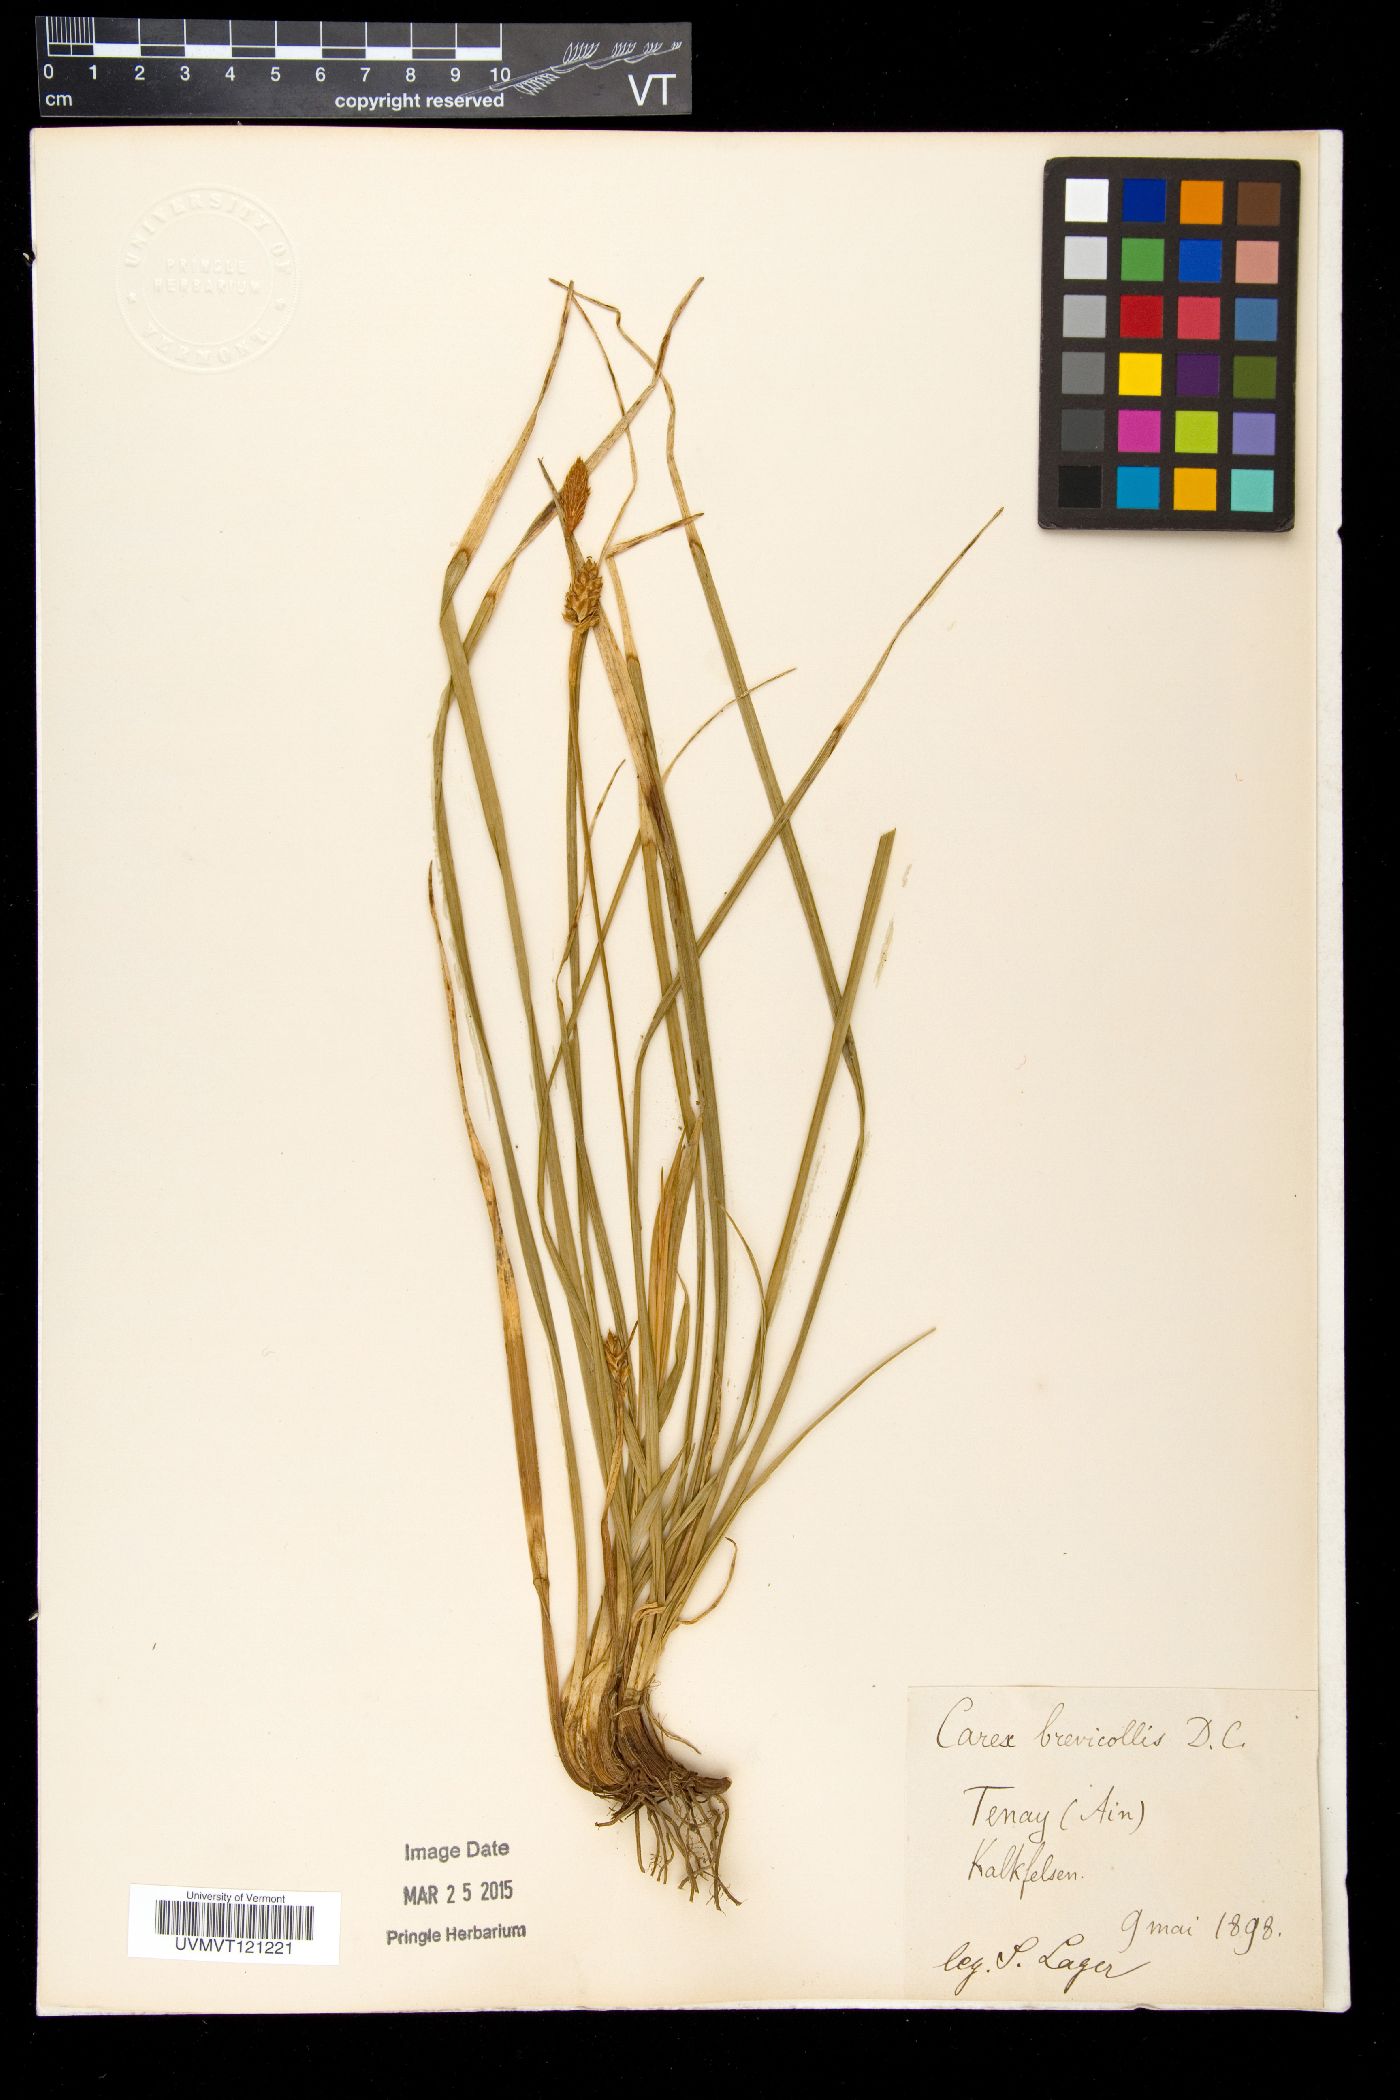 Carex brevicollis image